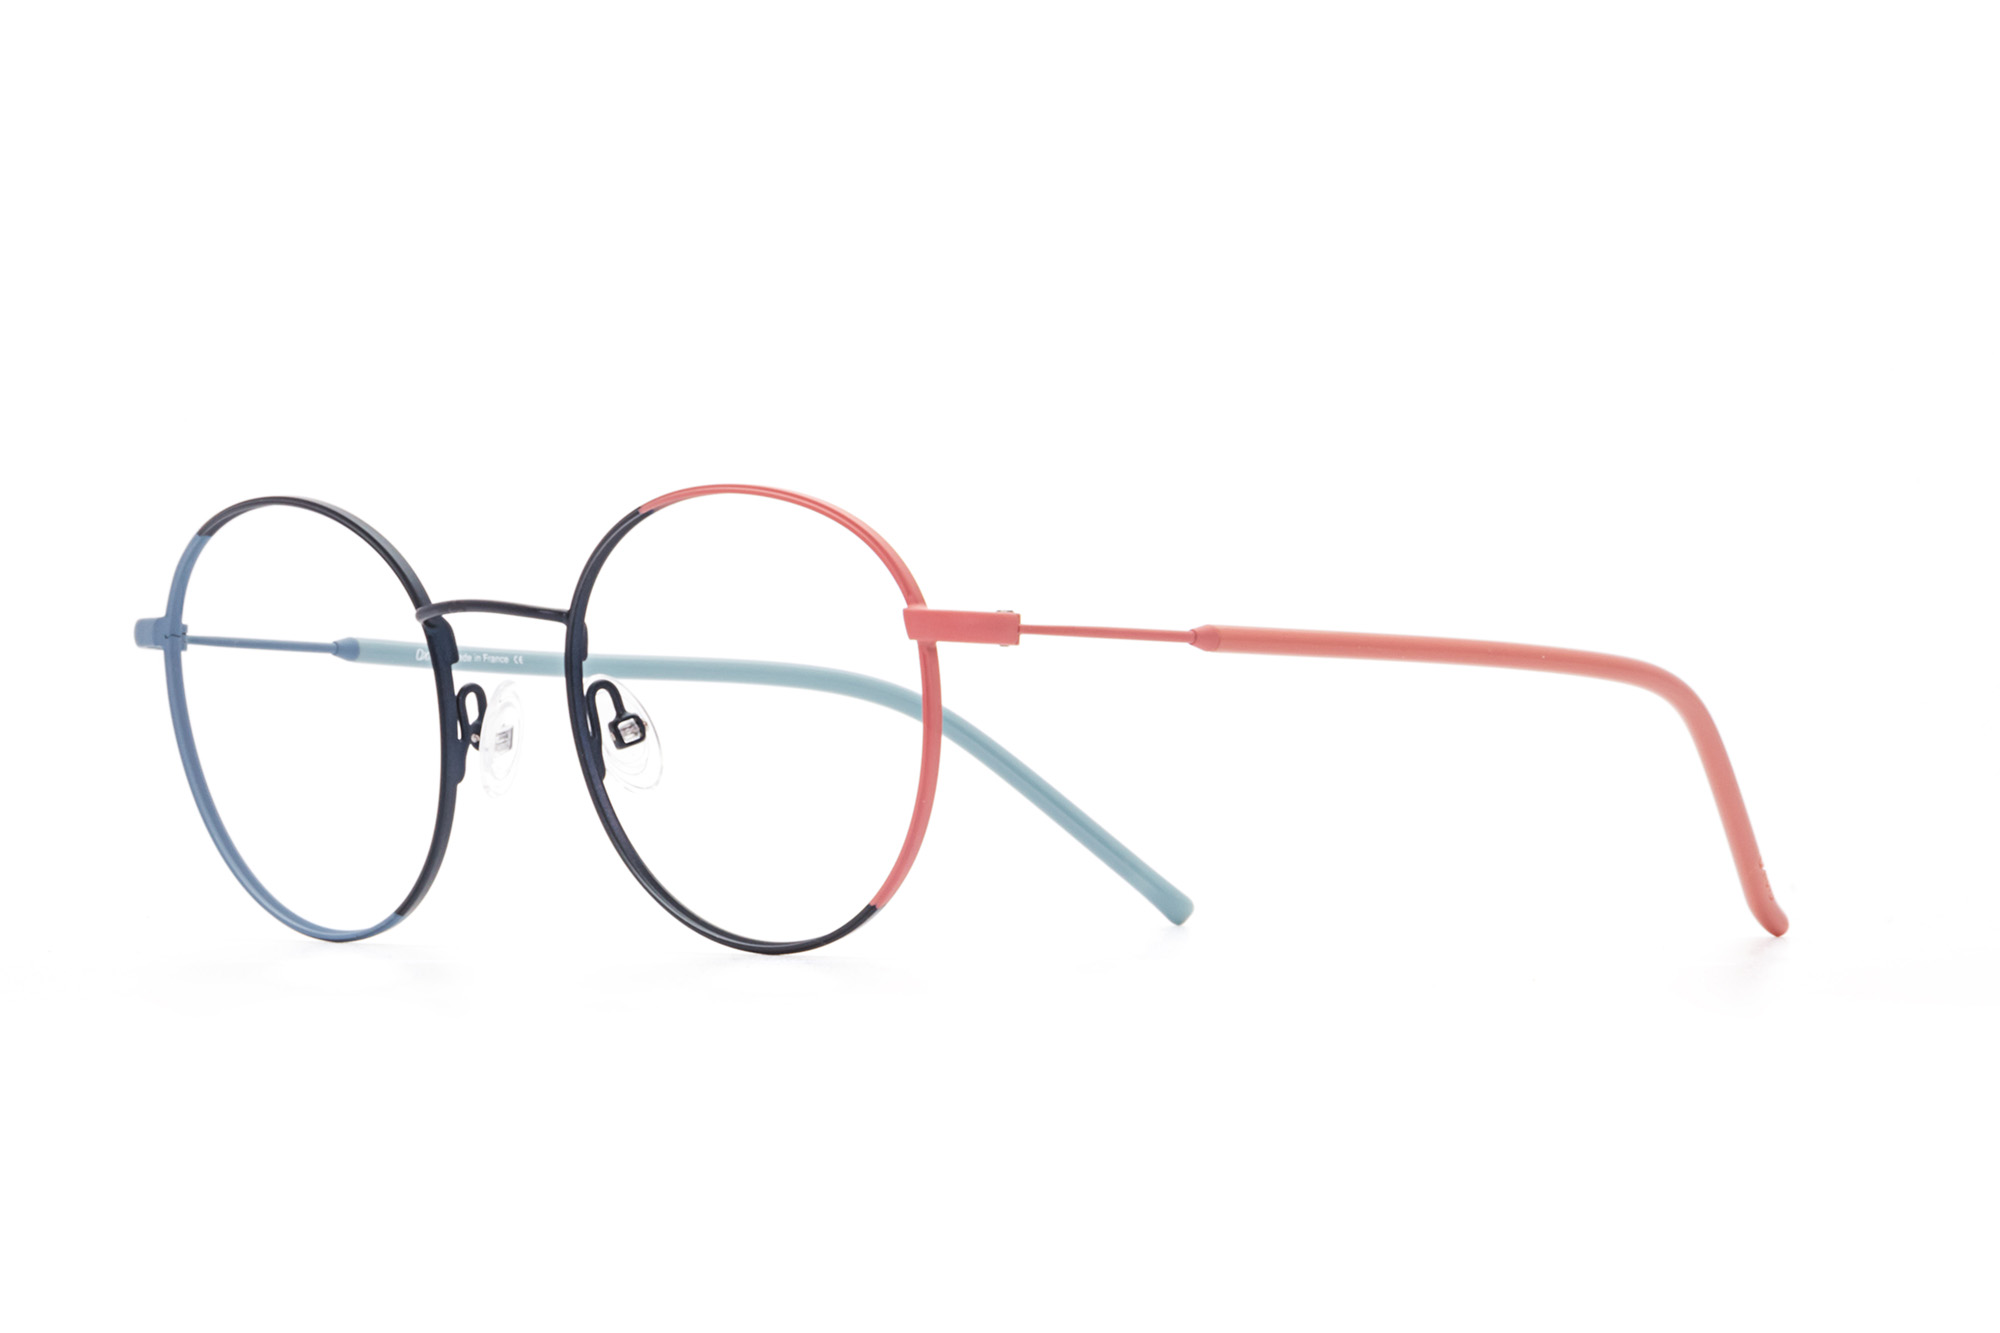 Kullanıma hazır optik tarzda işlenmiş camları ve optik uyumlu çerçevesiyle Oxibis Iggy IG4C6 49 küçük ekartman mavi, lacivert ve pembe renkli yuvarlak model unisex gözlüğü optisyen veya gözlükçülerin sunacağı numarasız veya numaralı cam özelleştirmeleriyle size en yakın gözlükçüden satın alabilirsiniz.